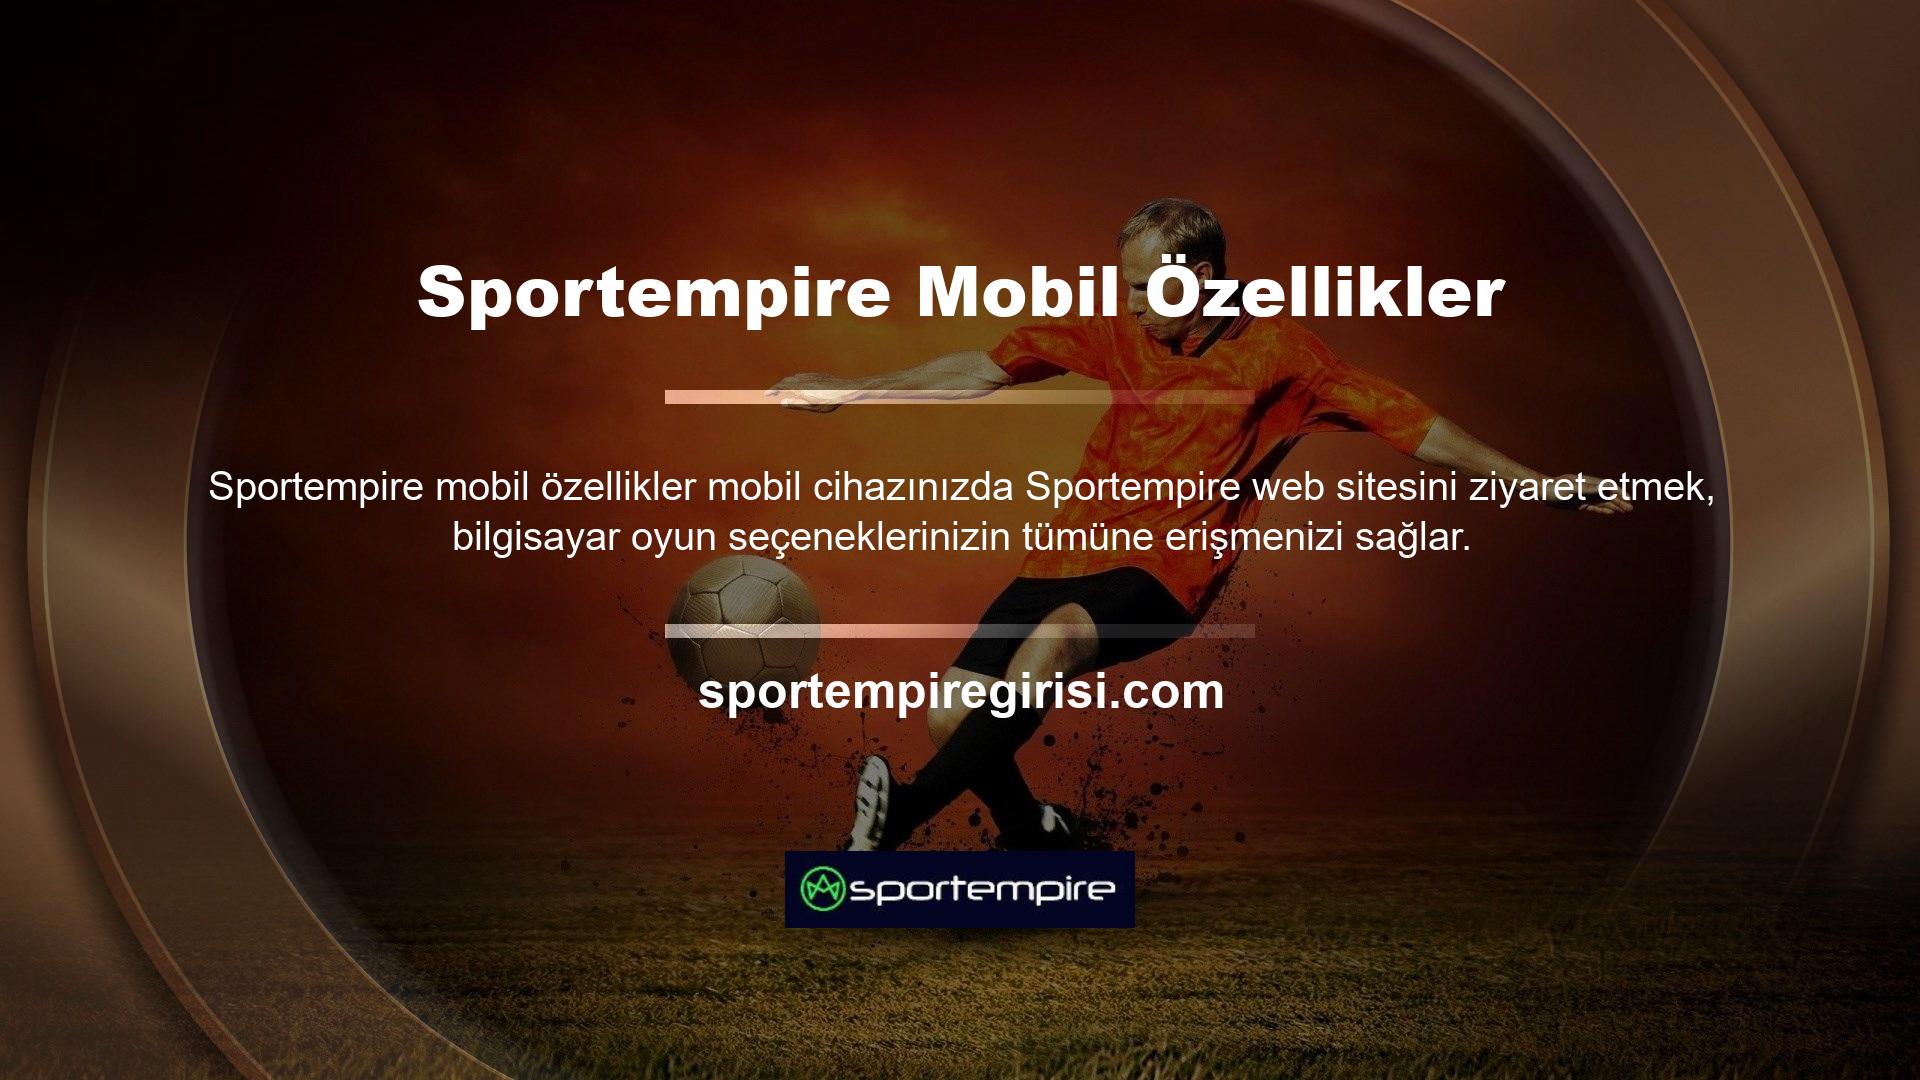 Sportempire Connect uygulaması, mobil sürümle aynı oyun deneyimini sunar